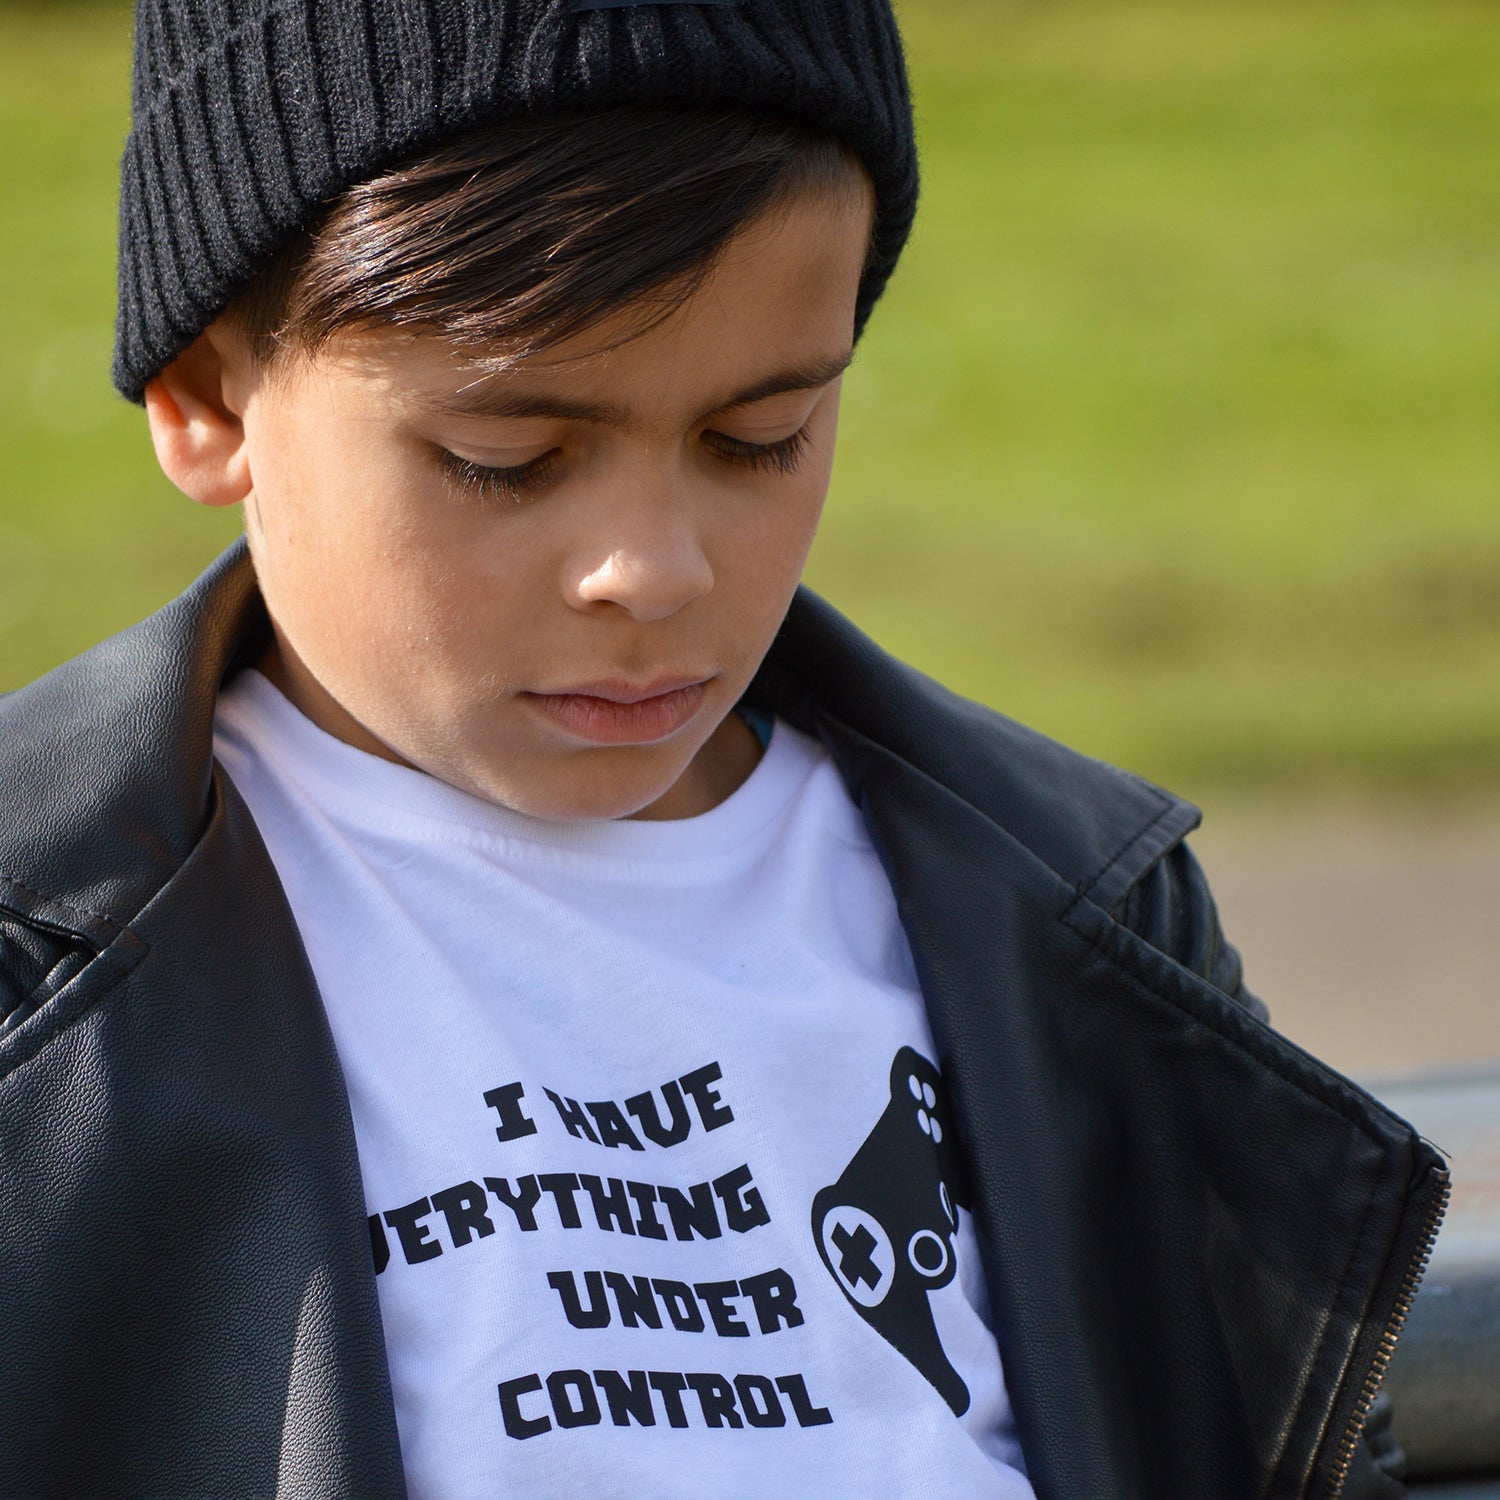 ‘I have everything under control’ kids shortsleeve shirt